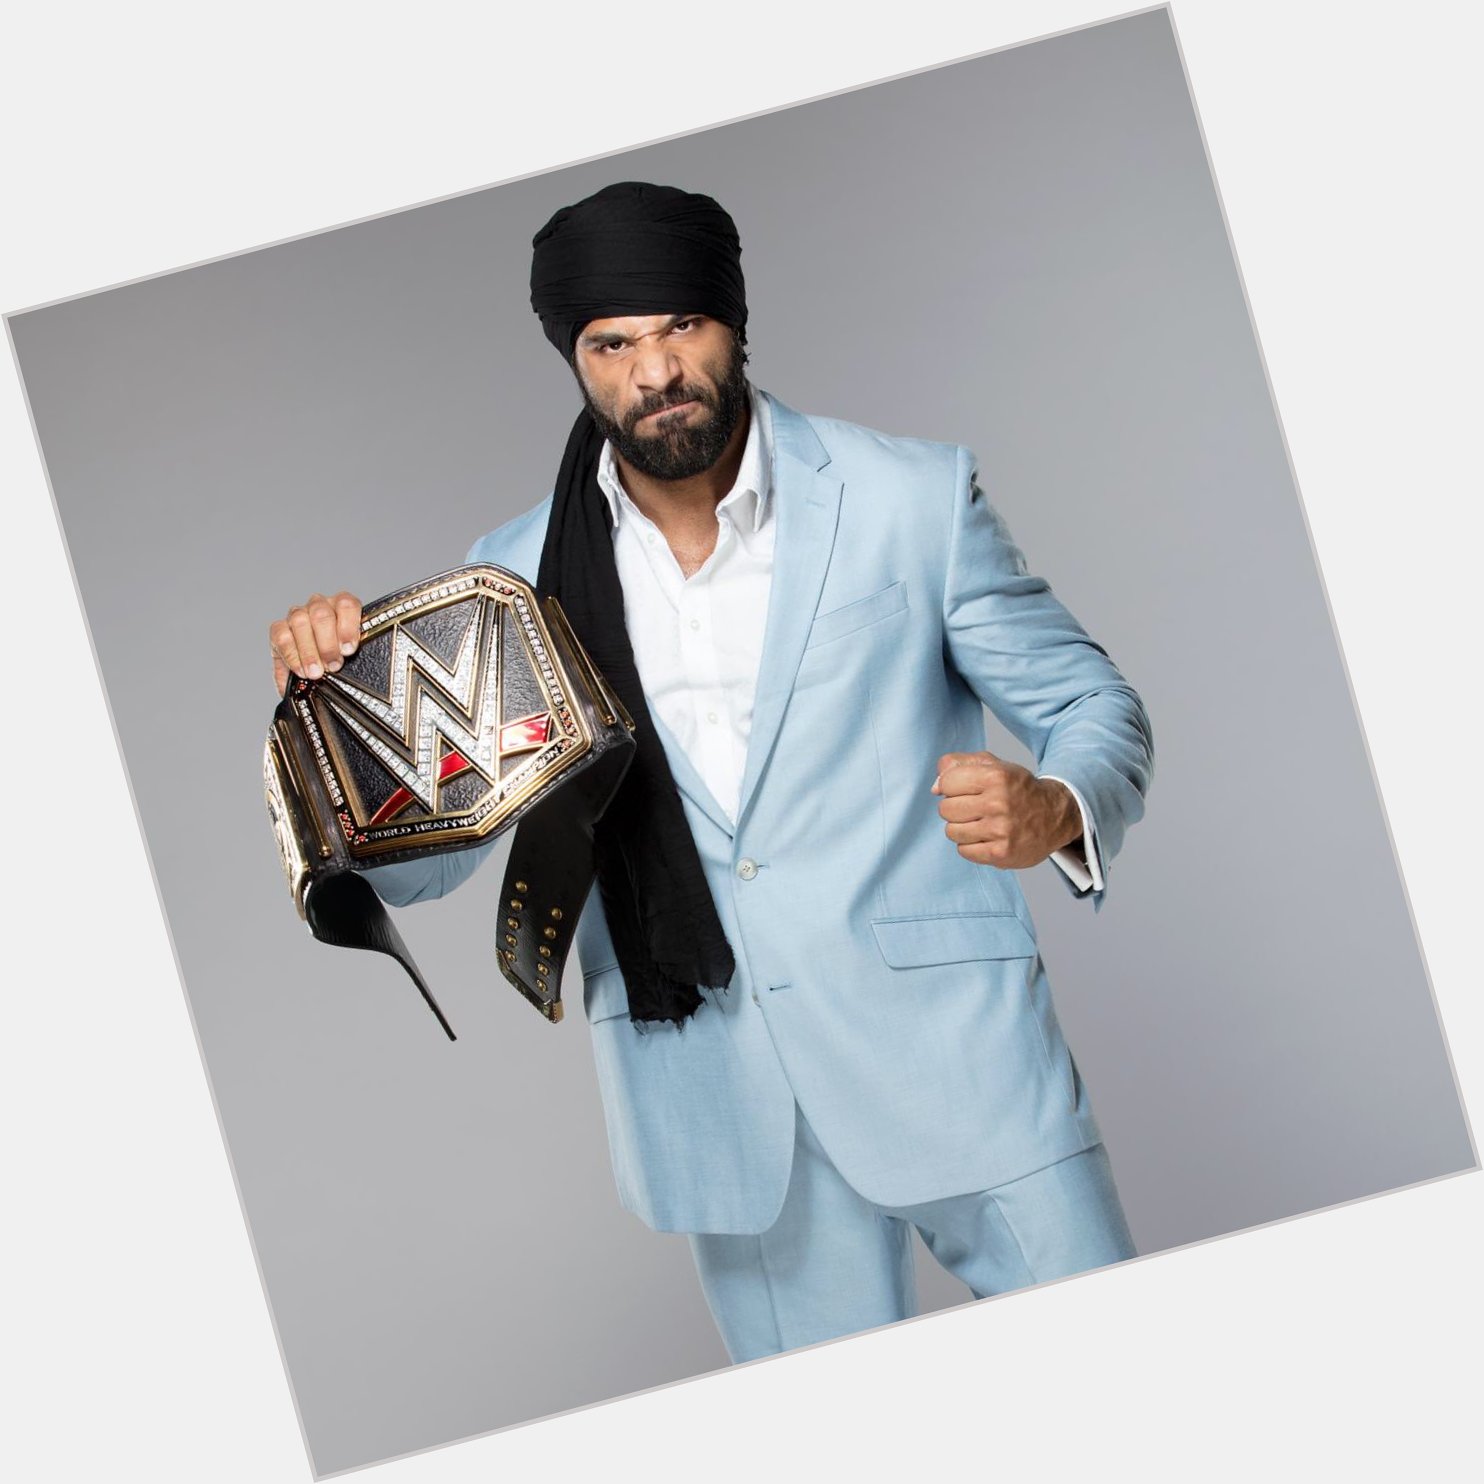 Hoy cumple 31 años el luchador Jinder Mahal actal campeón de WWE Happy Birthday   